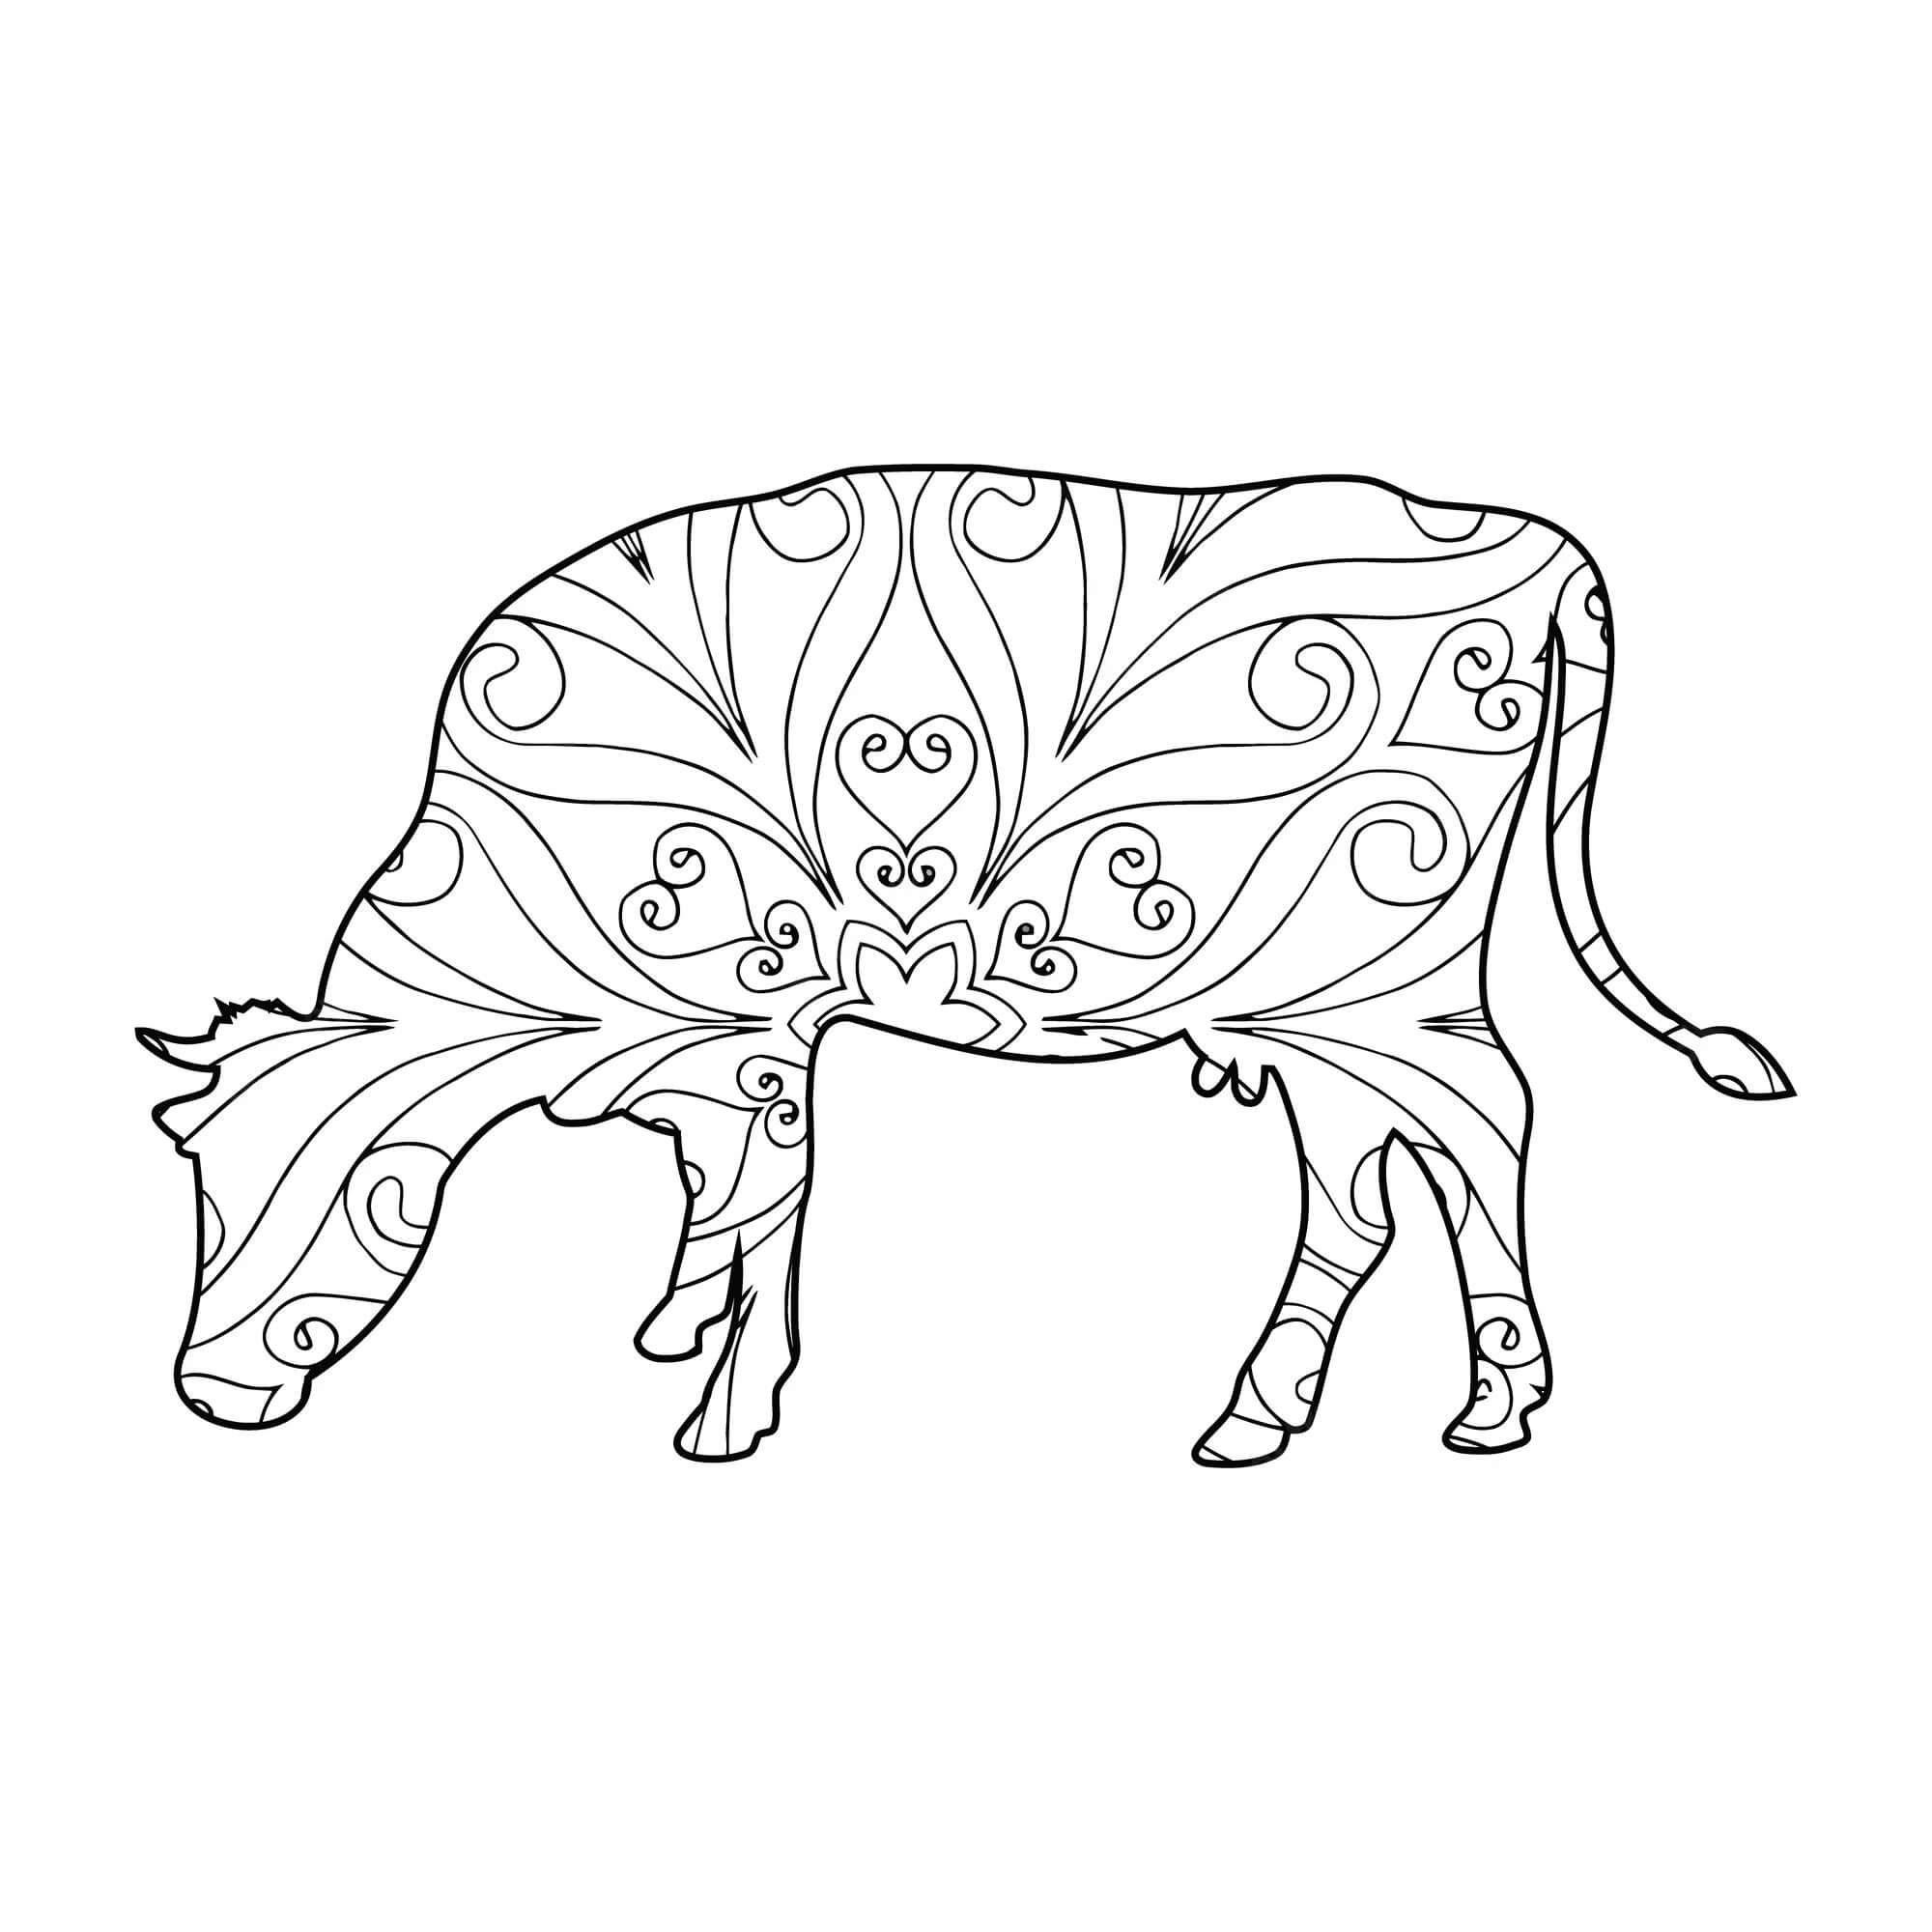 Mandala Cow Coloring Page - Sheet 2 Mandalas